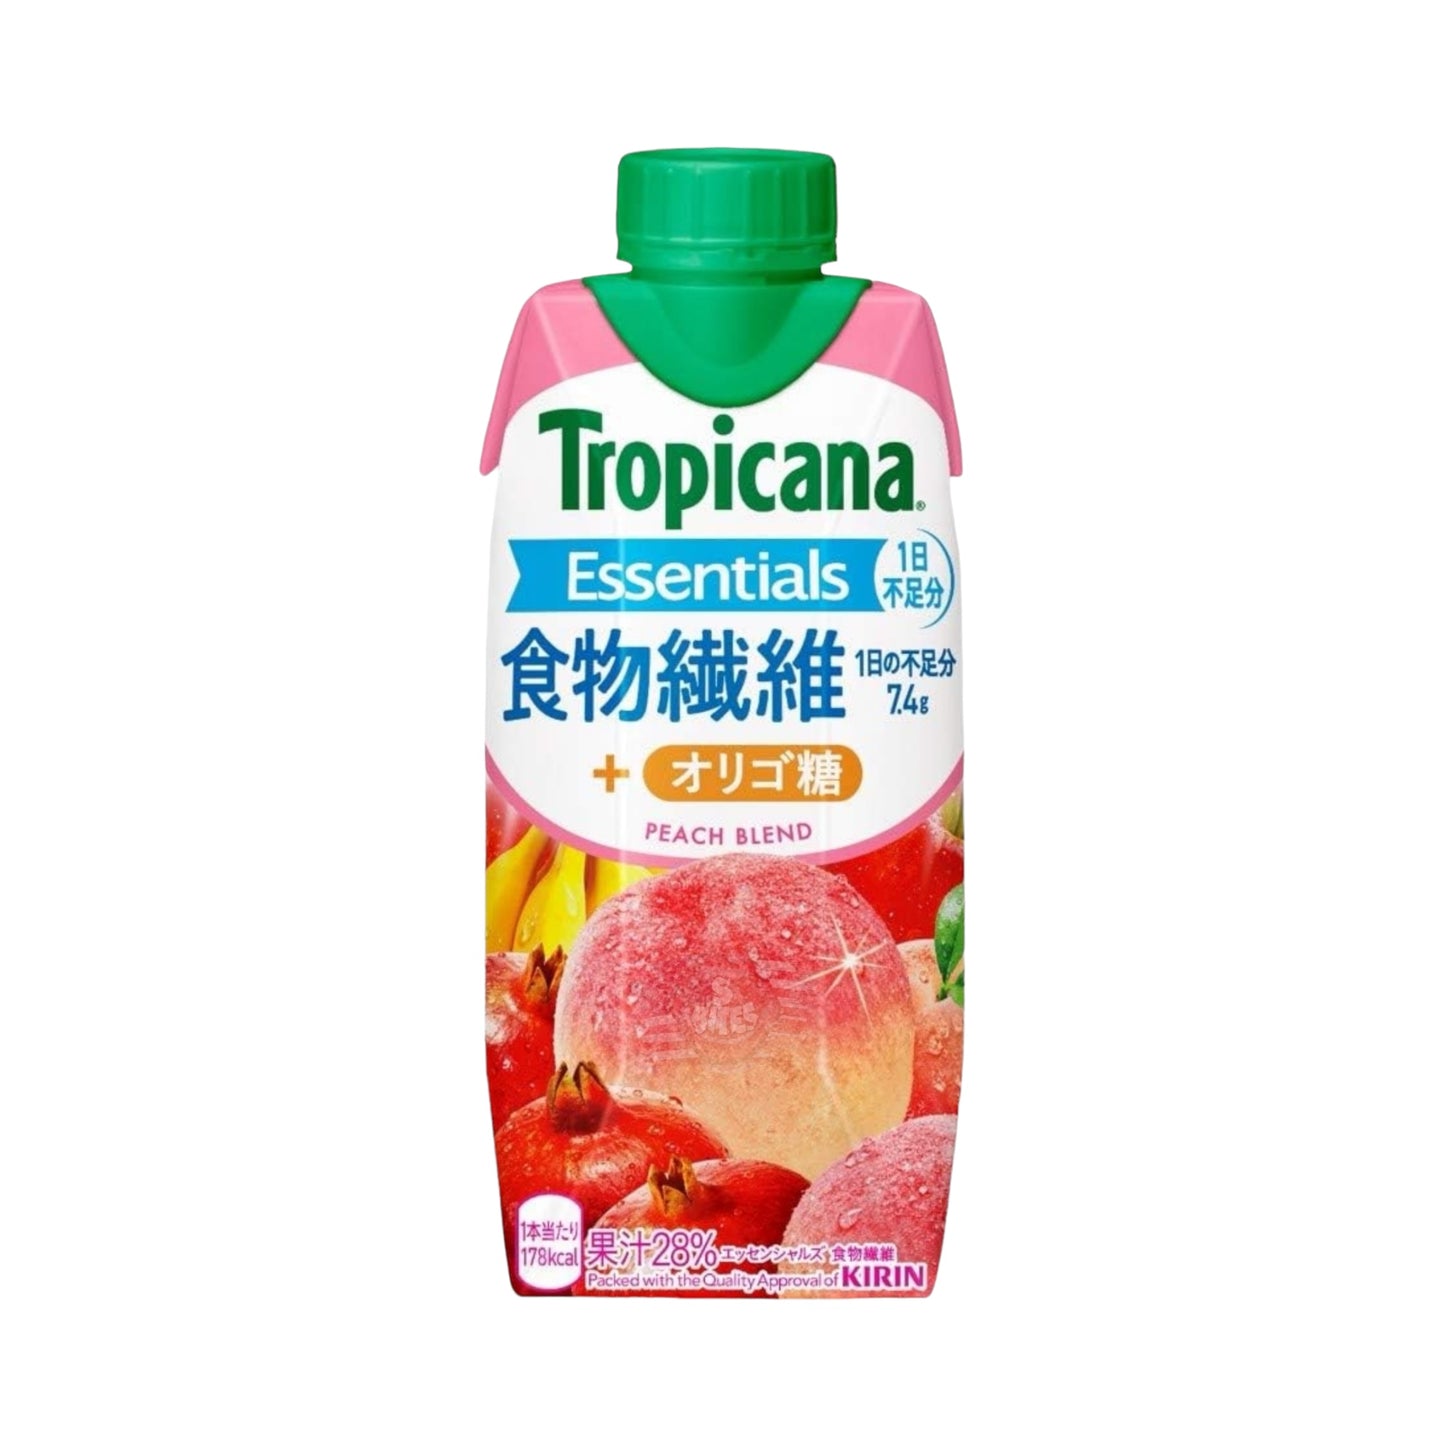 Tropicana Essentials Plus Peach Blend - 330ml (Japan)